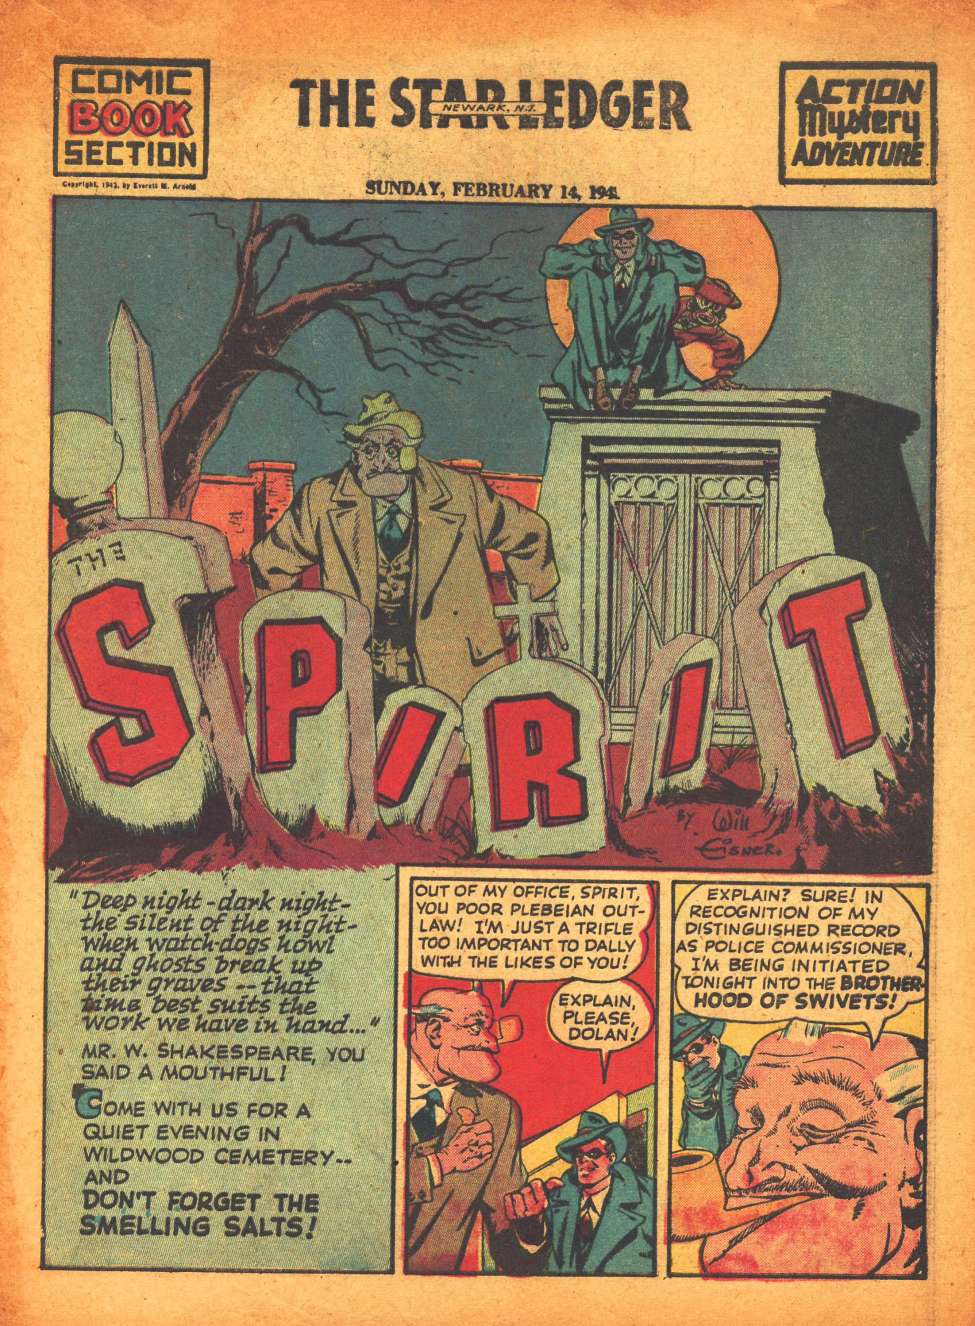 Comic Book Cover For The Spirit (1943-02-14) - Star-Ledger